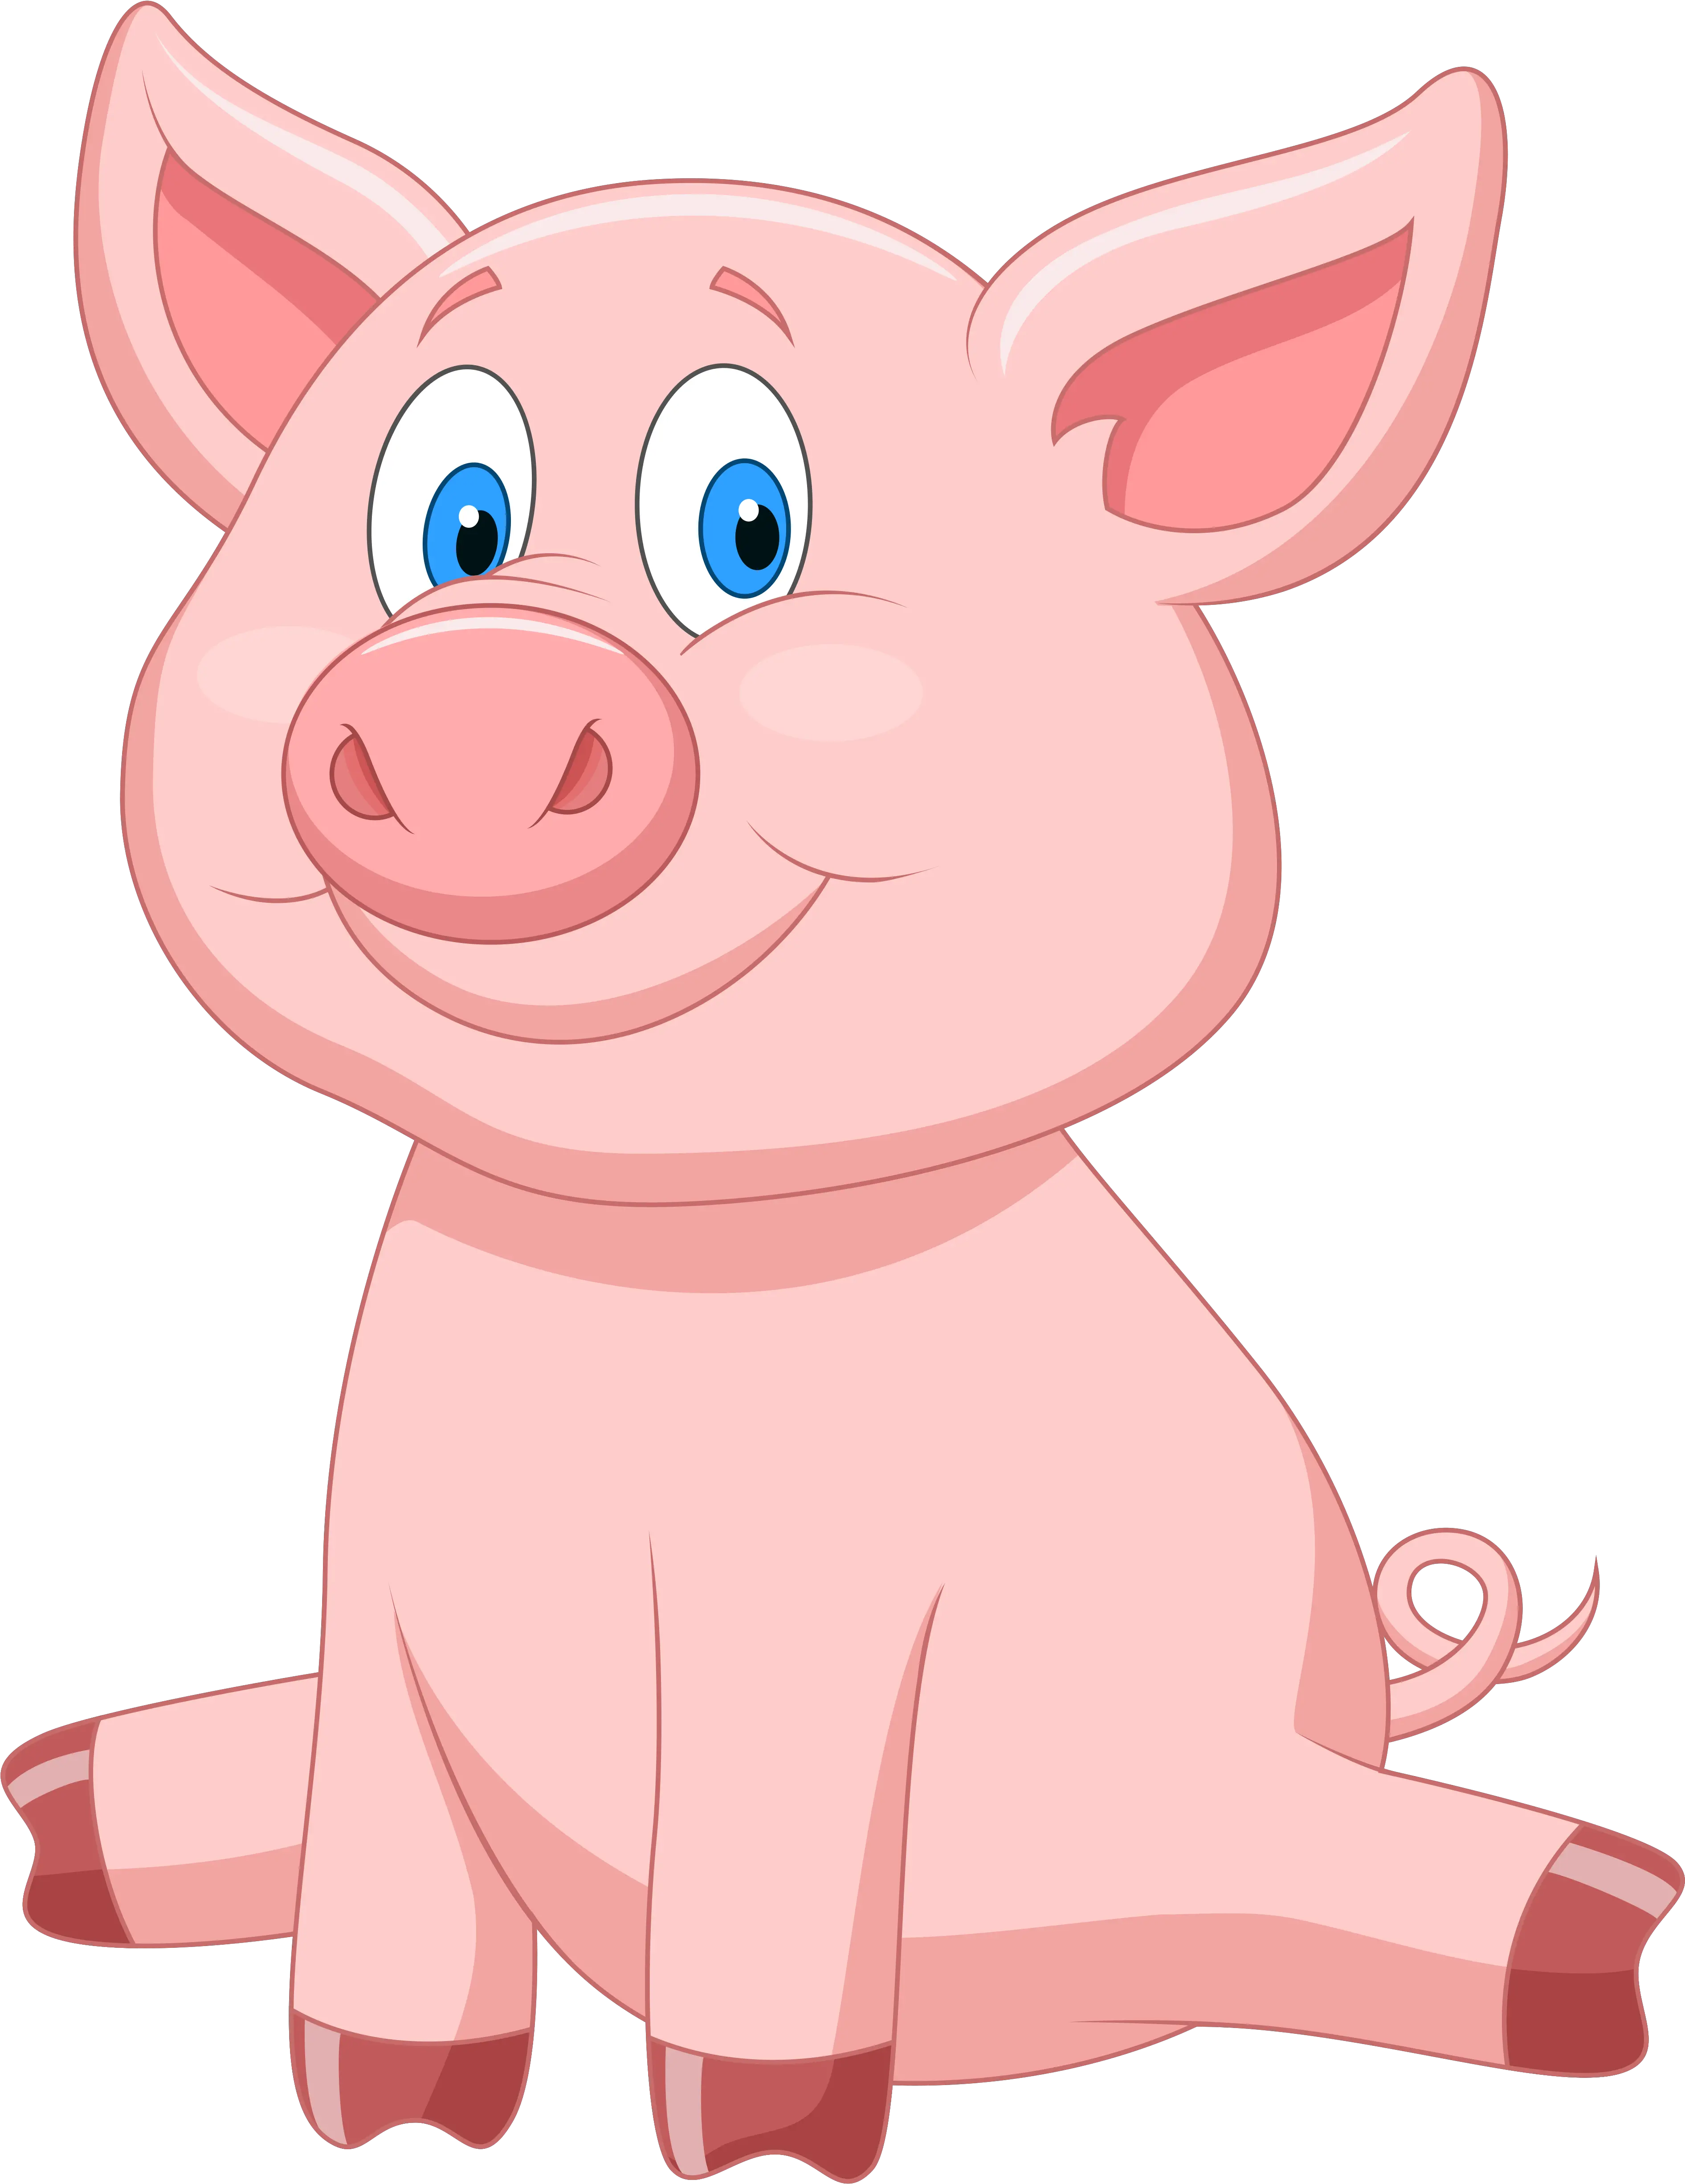 Download 0 1062c7 34485865 Orig 39105000 Pixels Cartoon Cartoon Pig Sitting Down Png Pig Transparent